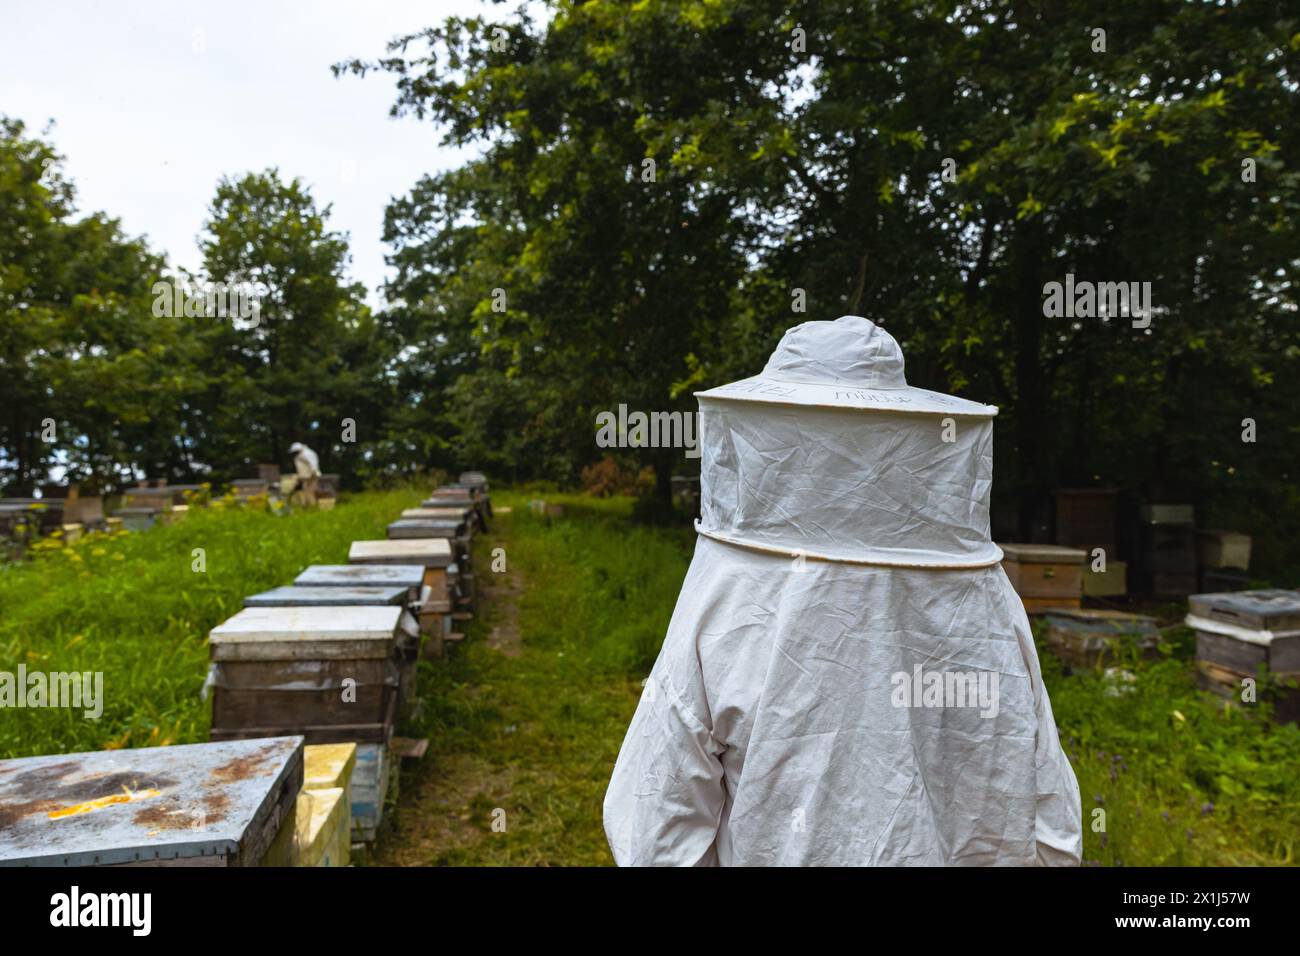 Imker oder Imker in der Imkerei. Hintergrundfoto für Bienenzucht- oder Bienenzuchtkonzept. Stockfoto